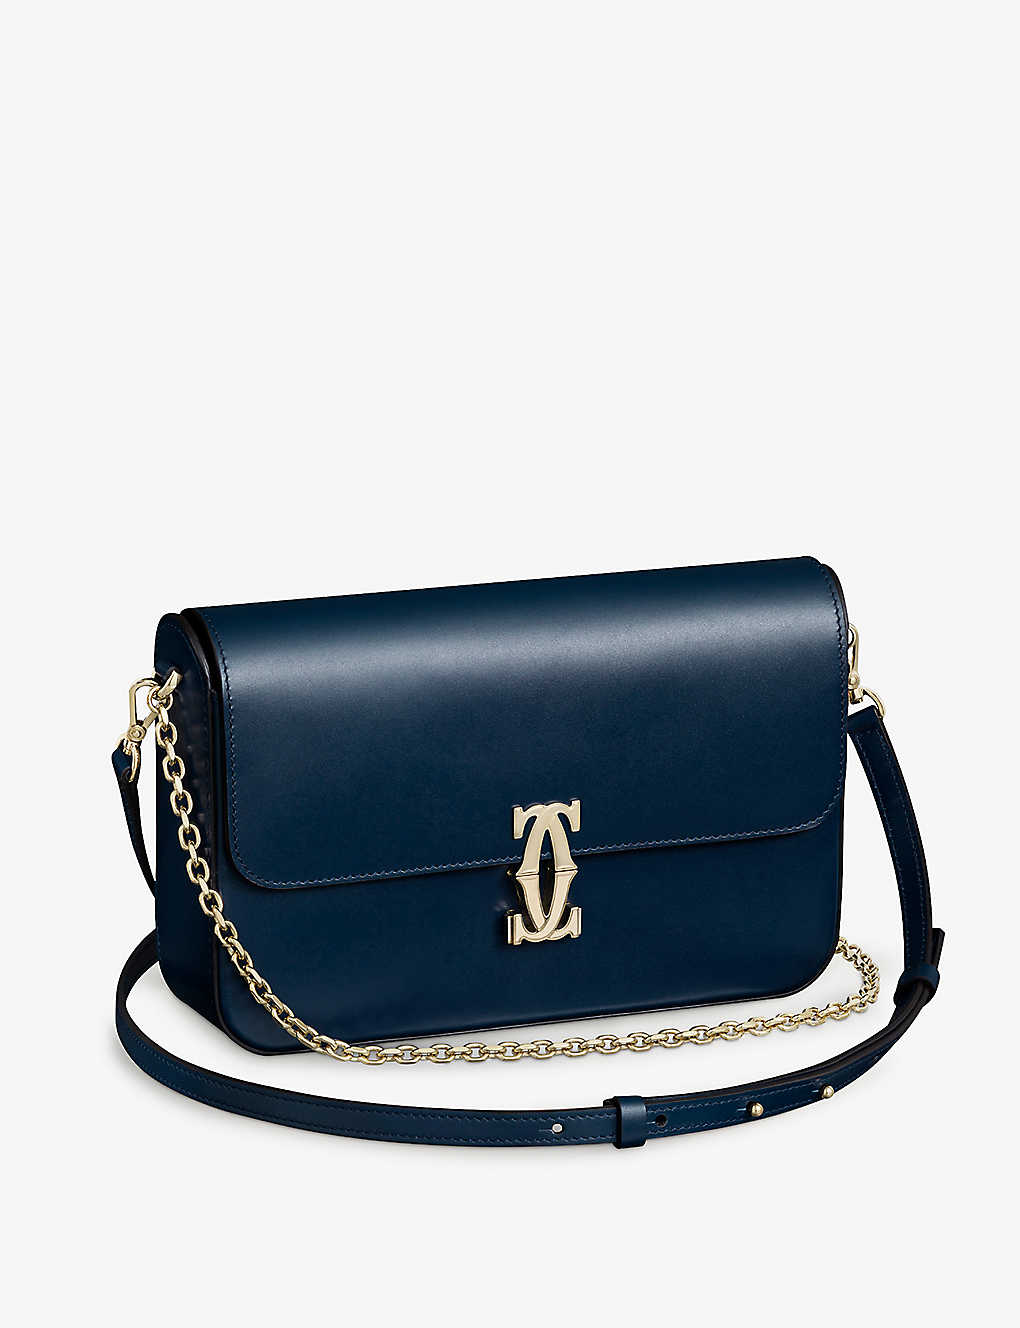 Cartier Womens Blue Double C De Small Leather Shoulder Bag